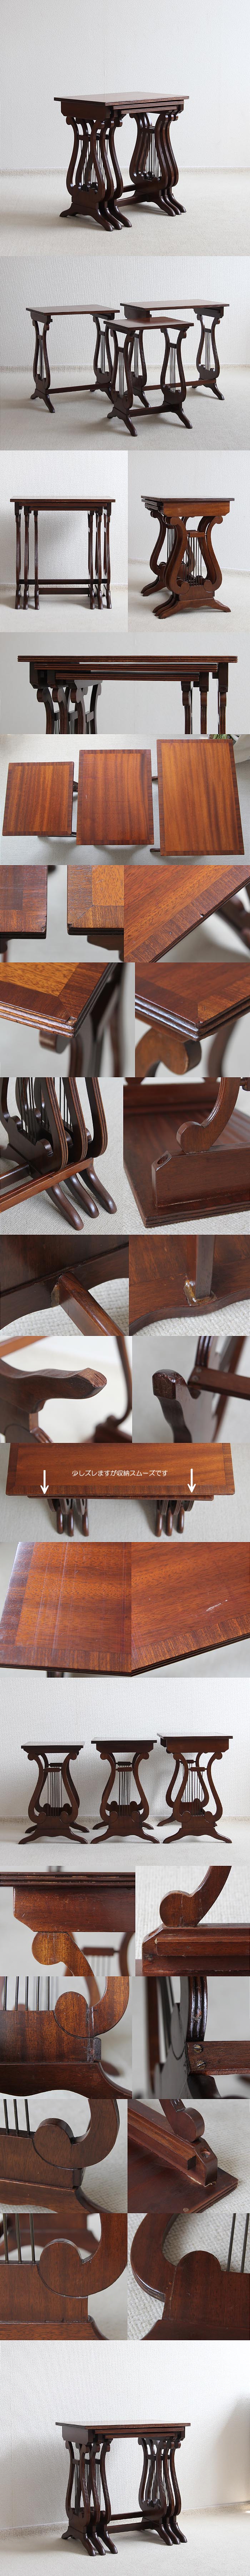 イギリス アンティーク ネストテーブル マホガニー ハープ脚 飾り台 家具「入れ子式テーブル」P-287